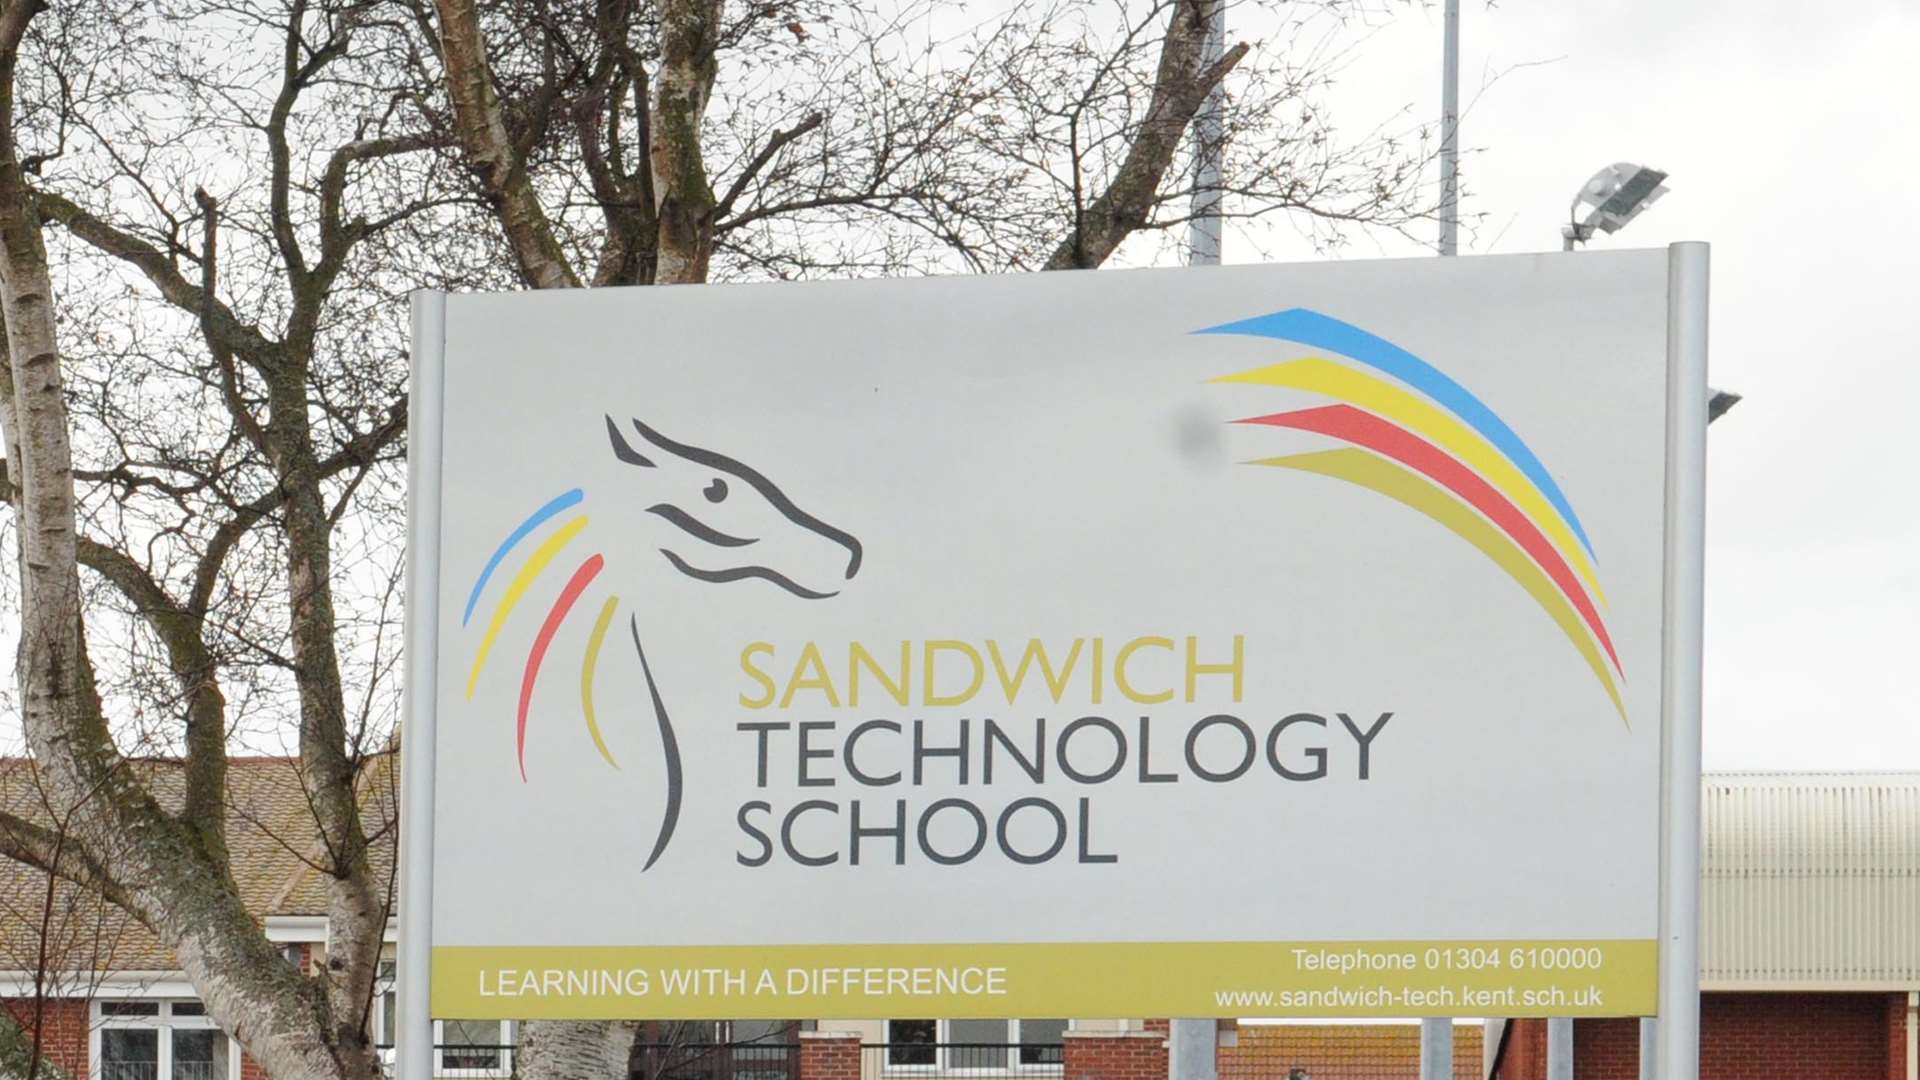 Sandwich Technology School will be sending children home